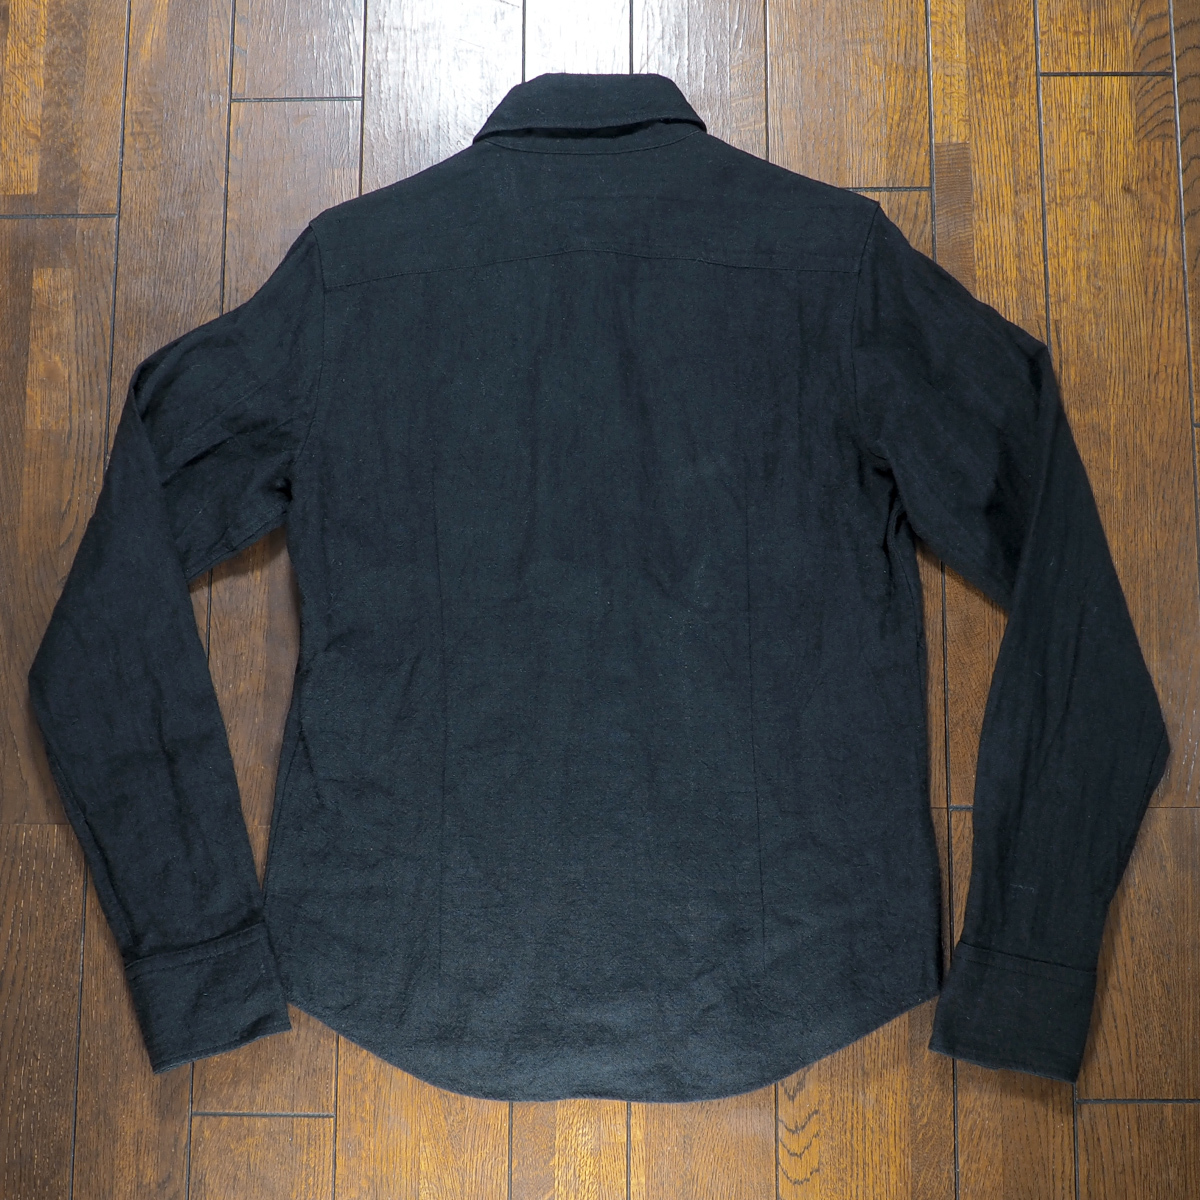 【送料無料】Yasuyuki Ishii(ヤスユキイシイ) フラワーリーフ刺繍 天然素材 ボタンダウンシャツ 黒 中古品 古着